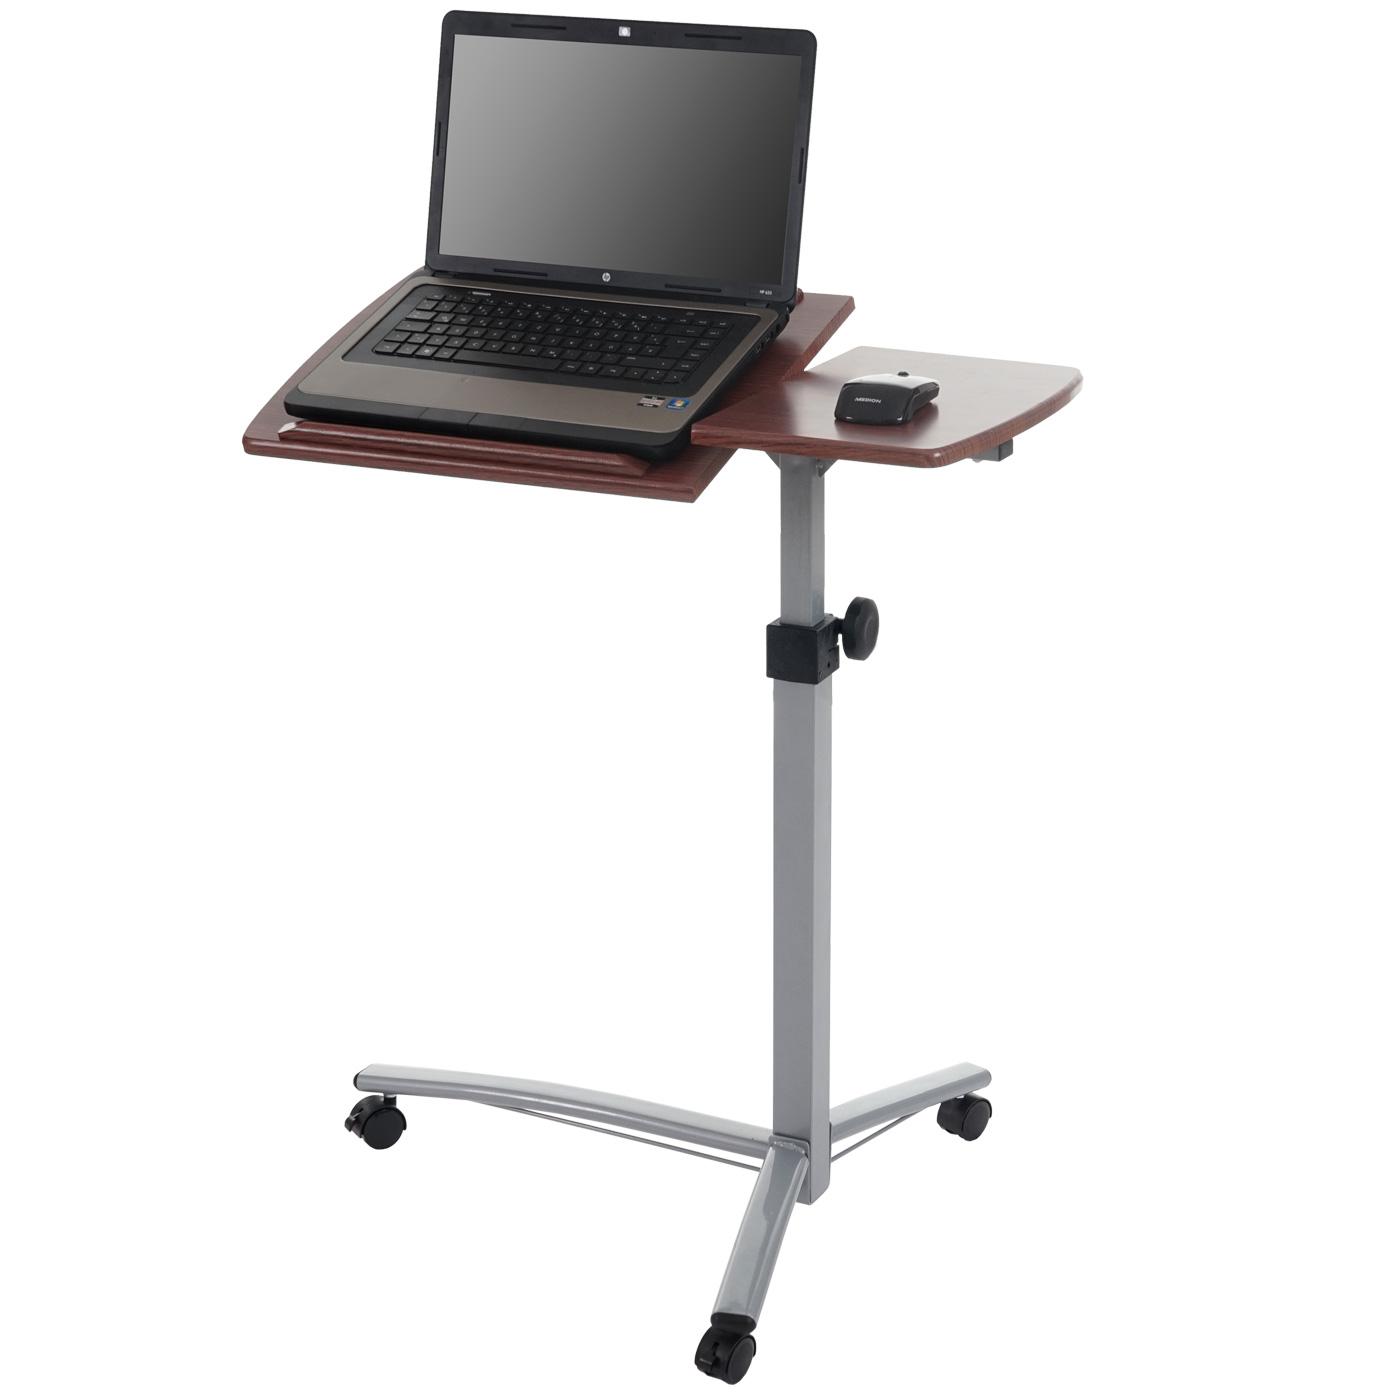 Tavolino / Leggio per Computer Portatile STAND, Altezza regolabile, Con Ruote, Ripiano in Legno color Noce